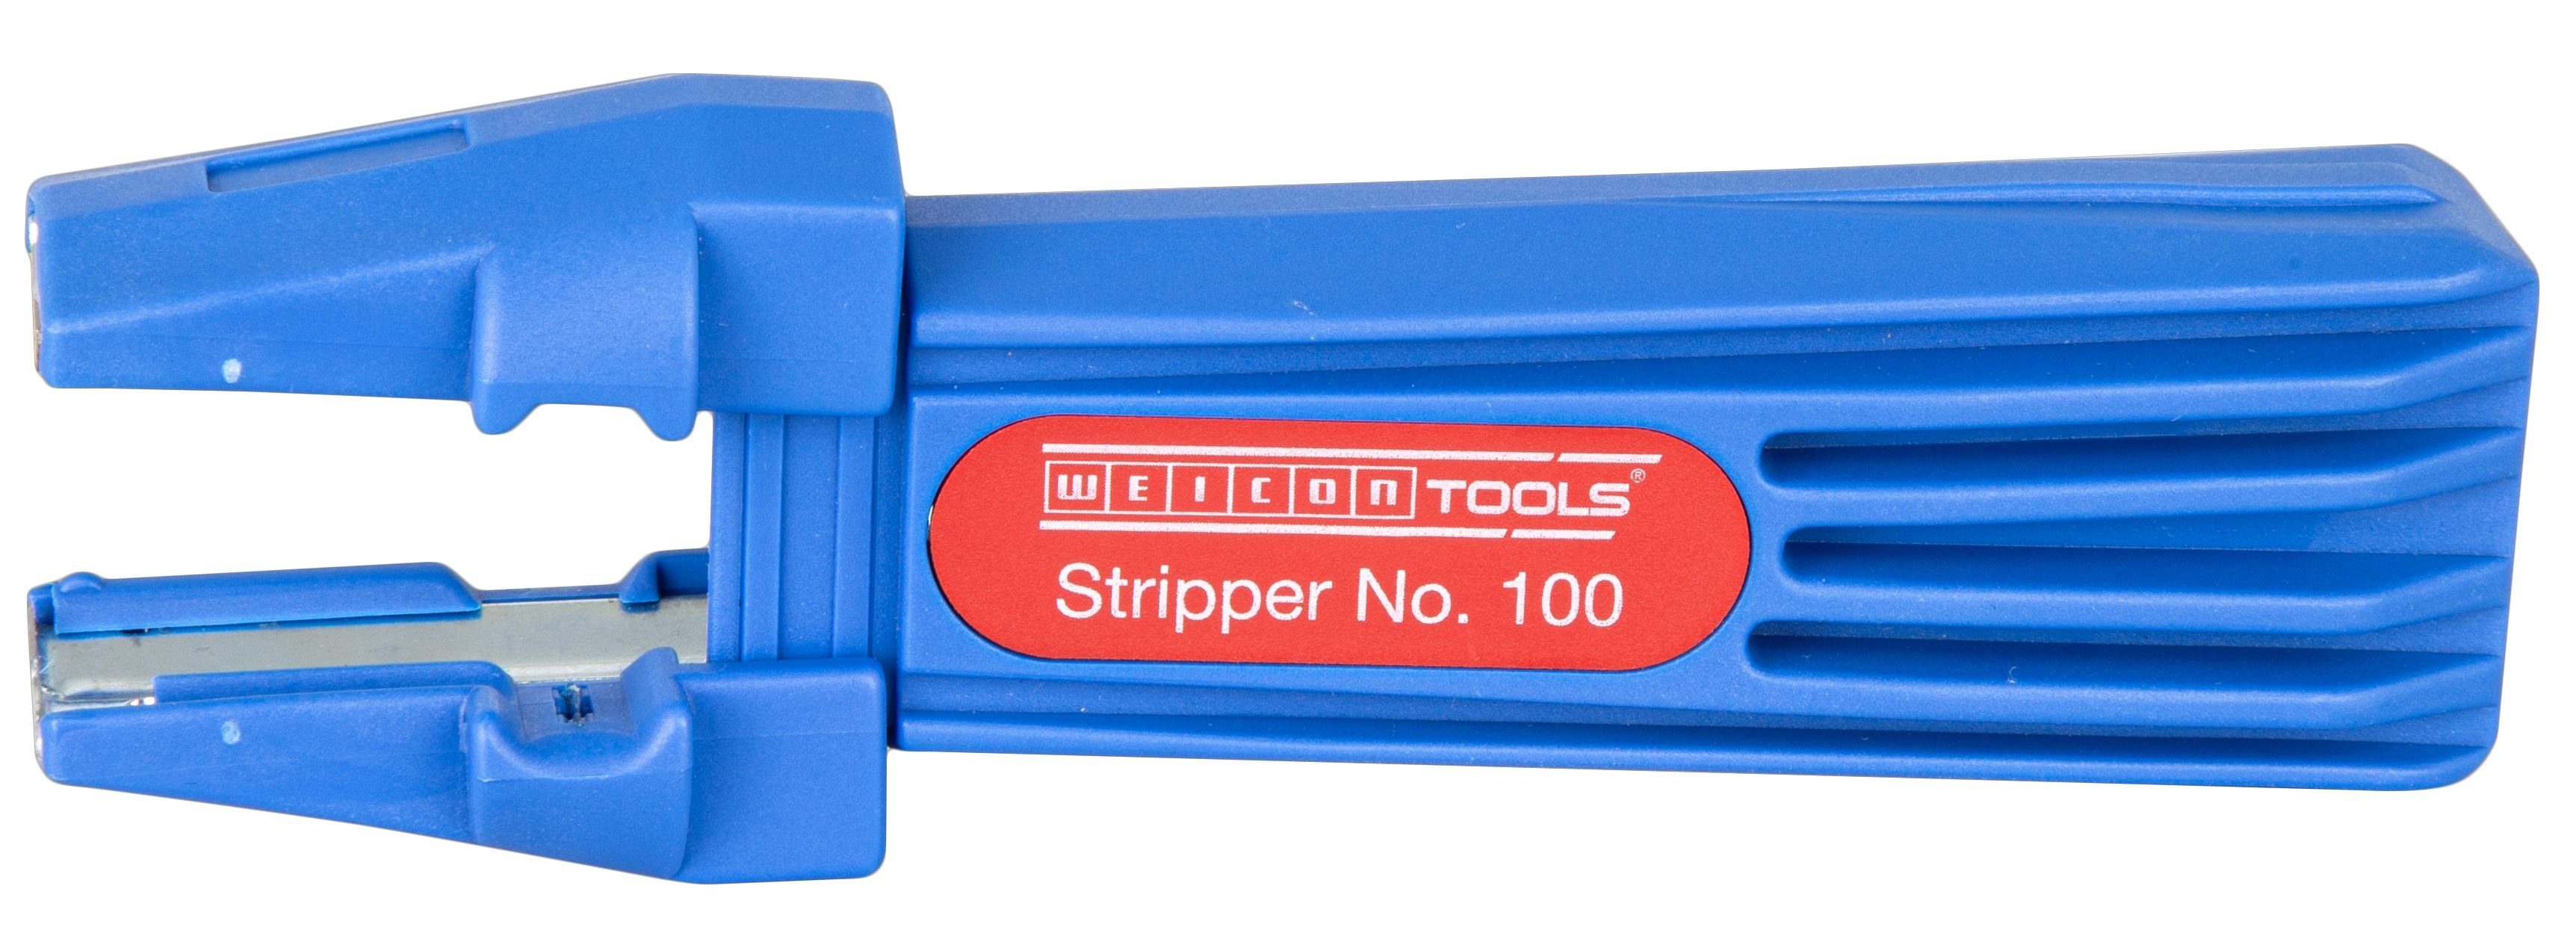 WEICON Abisolierzange Stripper No. 100, Multifunktions-Abisolierwerkzeug, 1-tlg., Für viele verschiedene Kabeltypen in der Hausinstallation